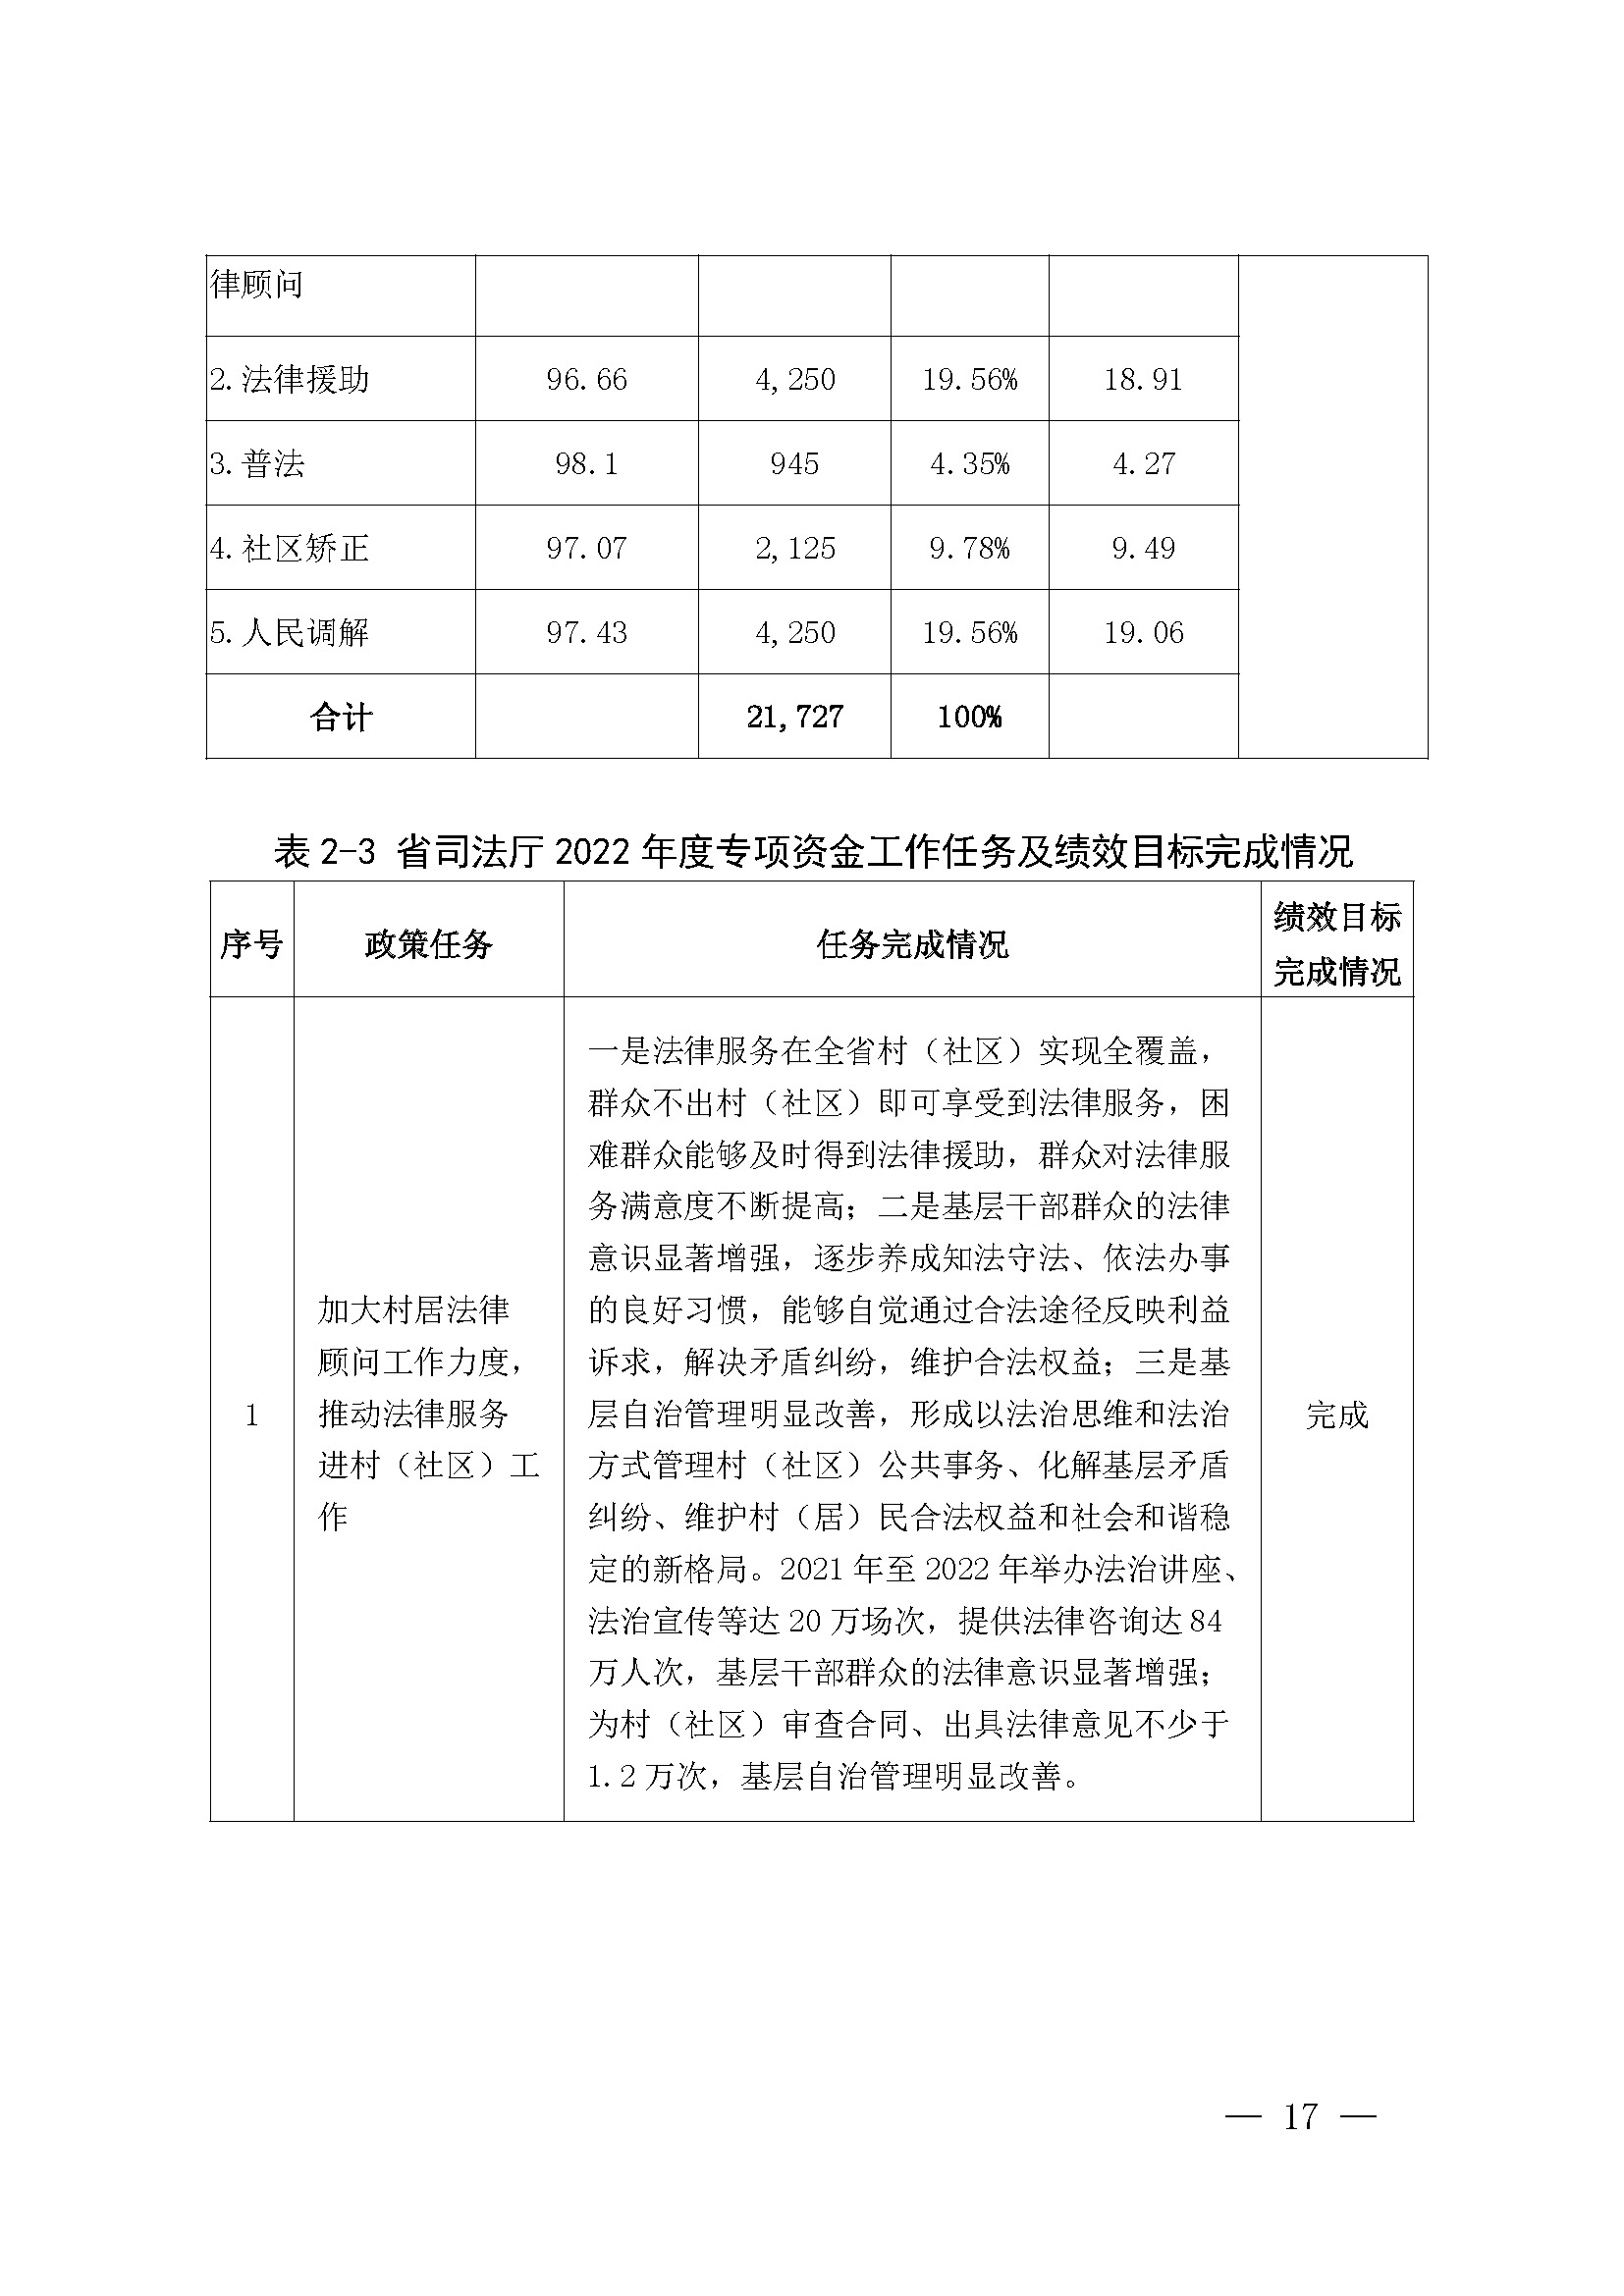 广东省司法厅2022年度部门整体支出绩效自评报告_页面_17.jpg